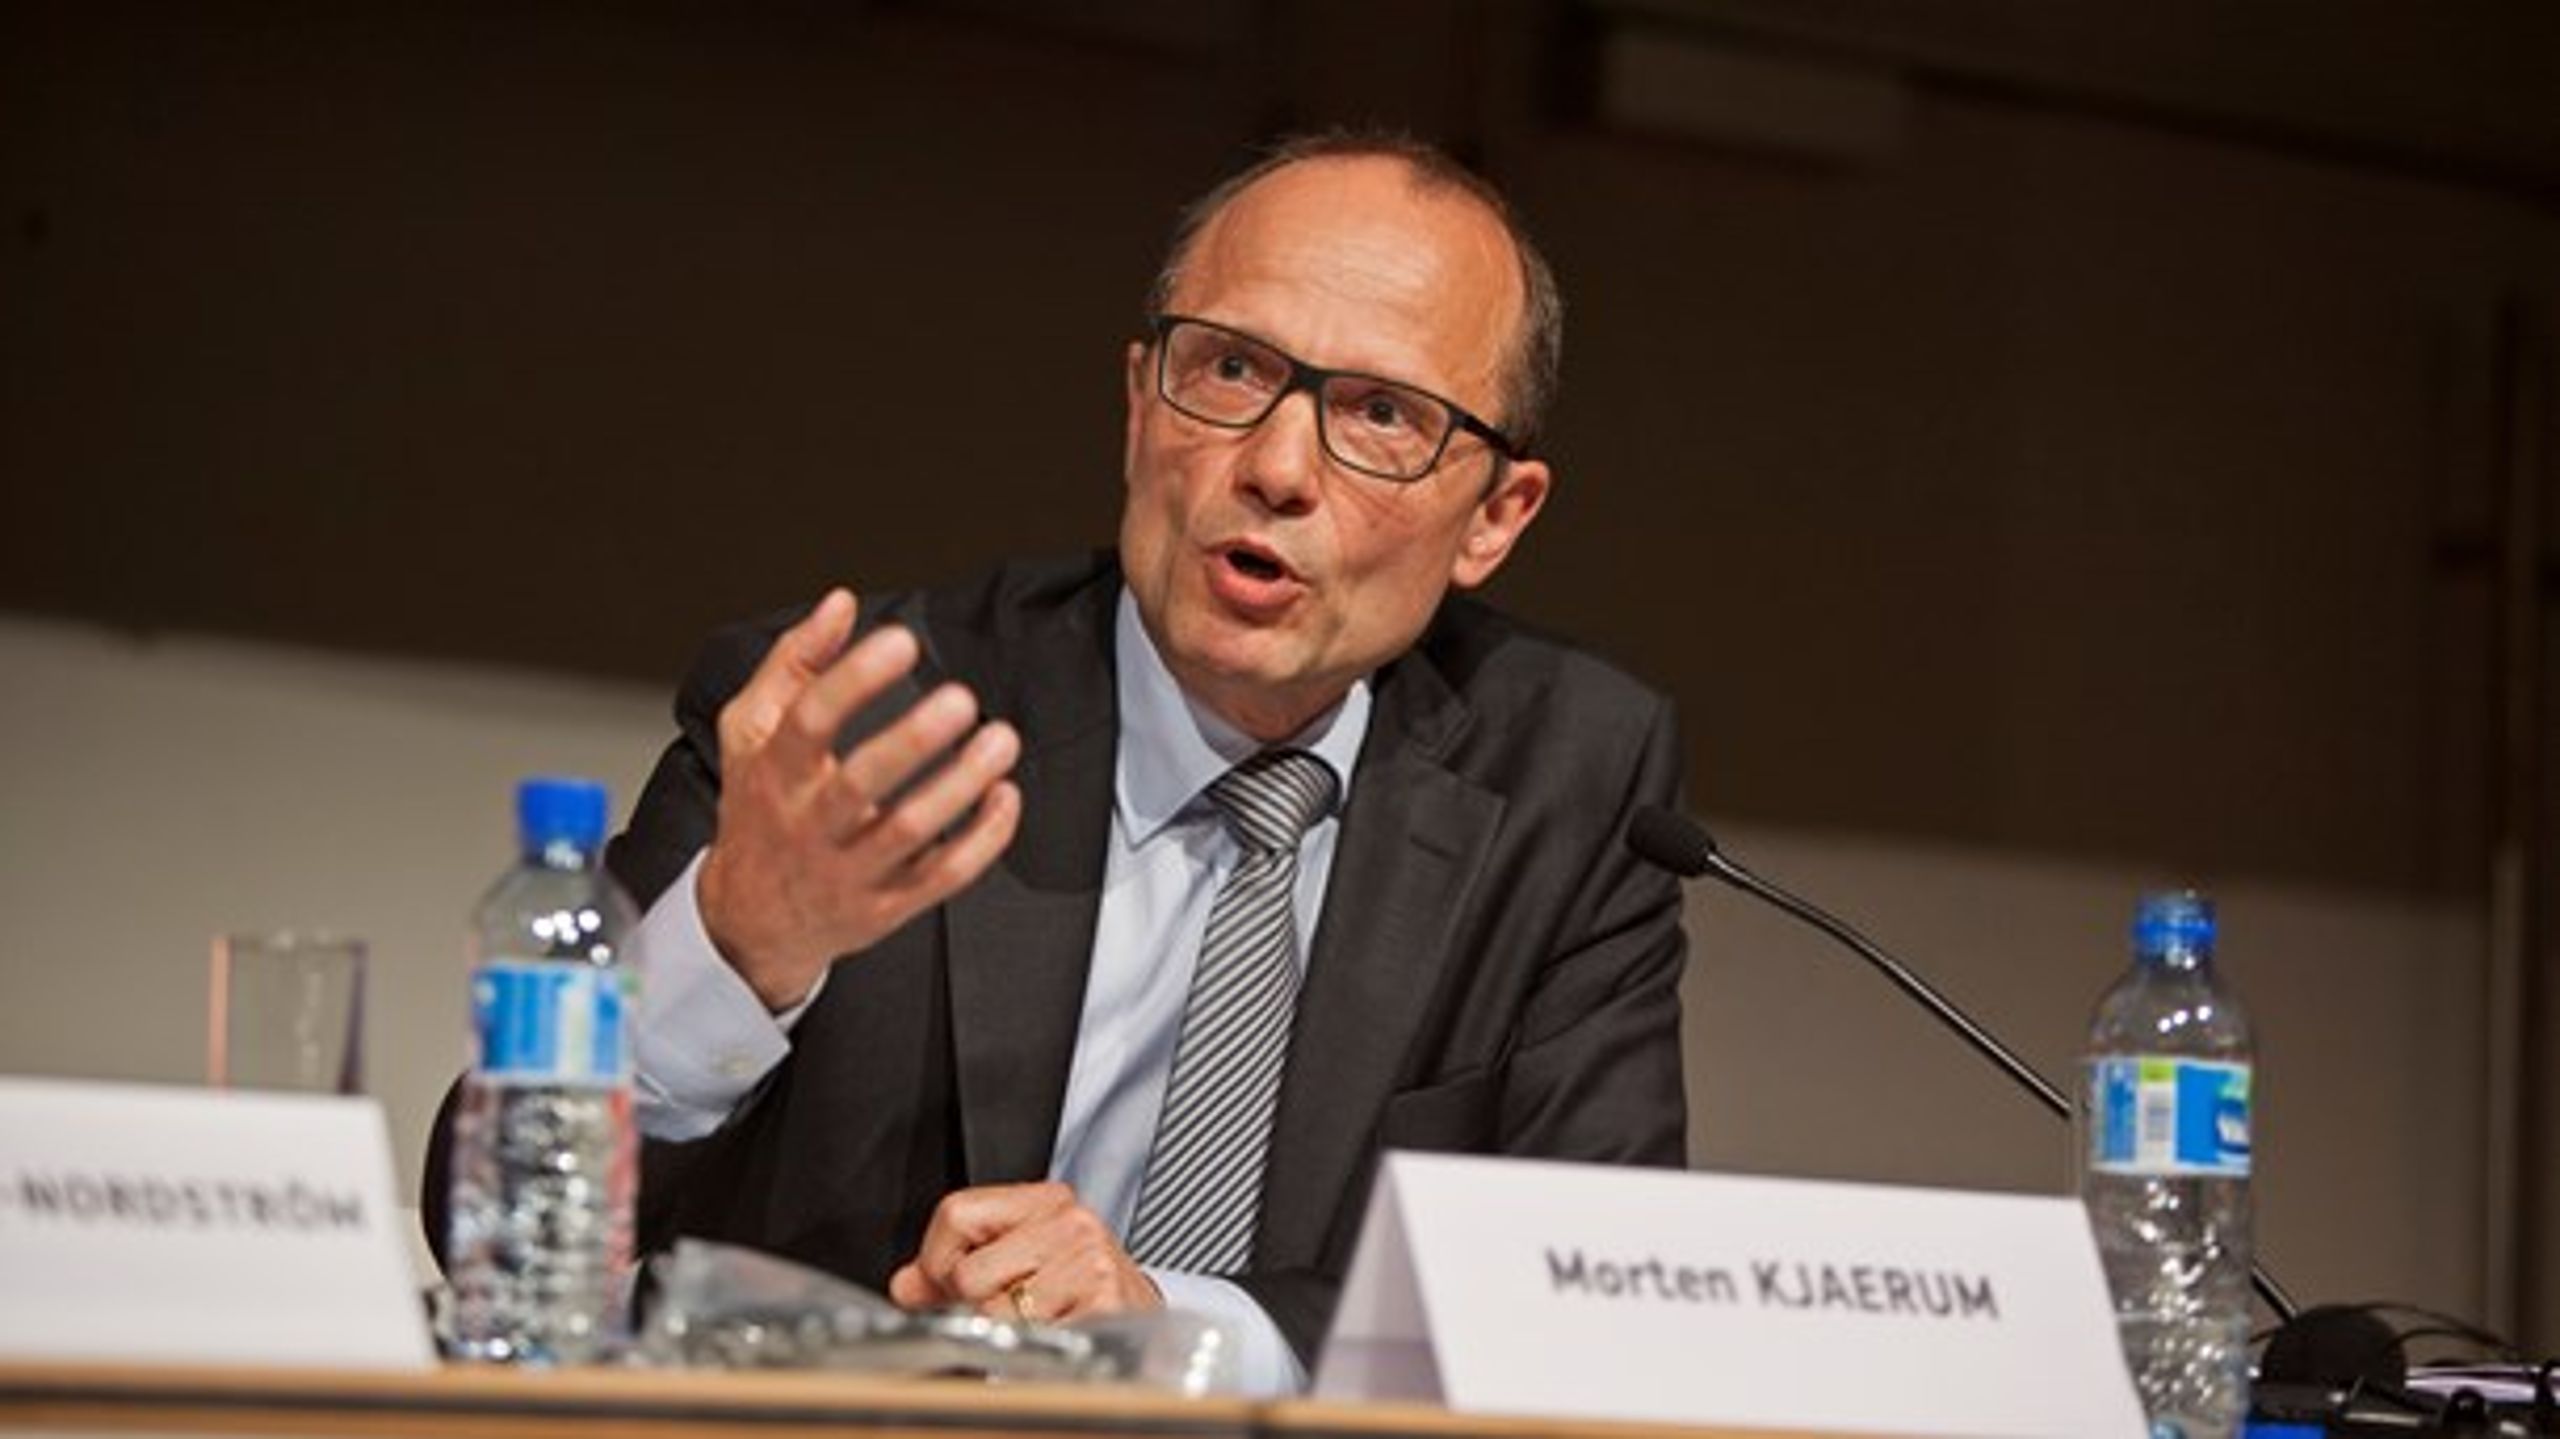 Morten Kjærum mener, at en pragmatisk tilgang til konventionerne er dybt problematisk for et nationalt institut for menneskerettigheder.